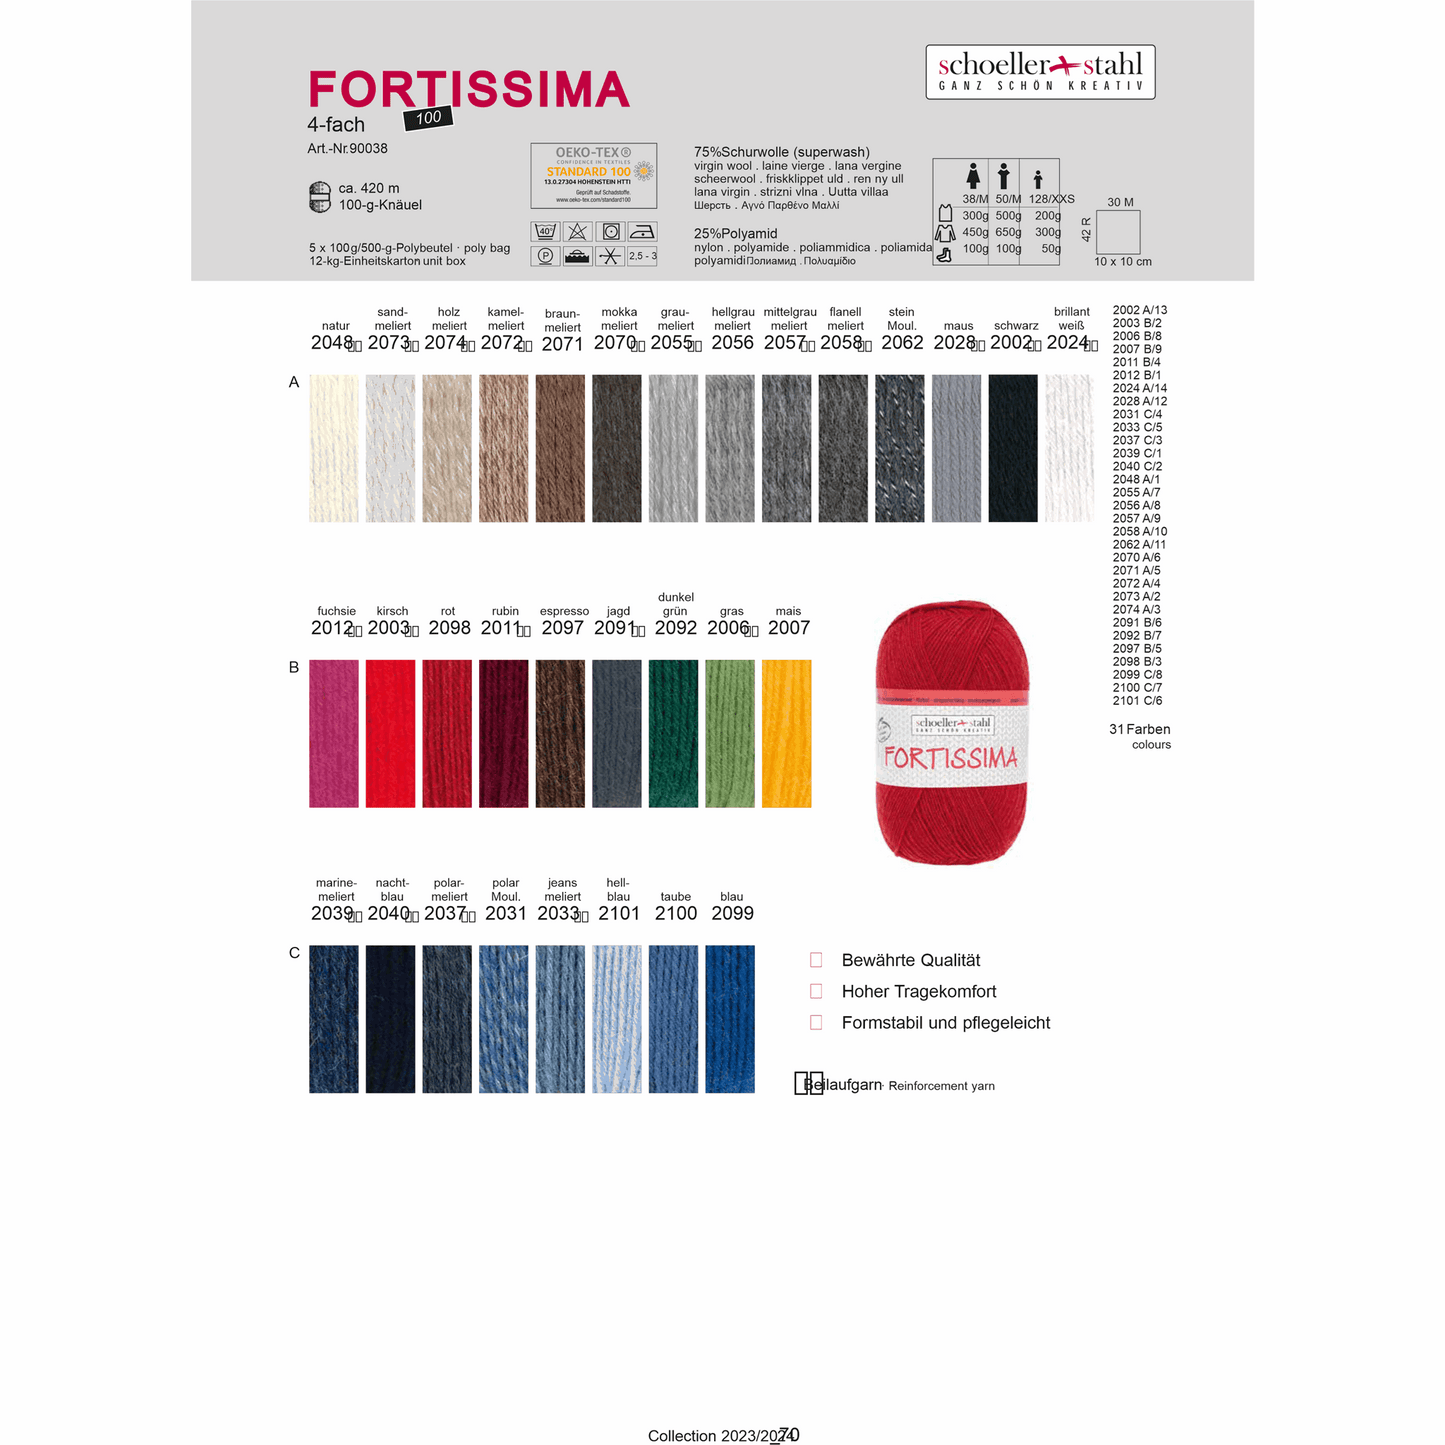 Fortissima socka 100, 90038, color 2056, light gray mottled